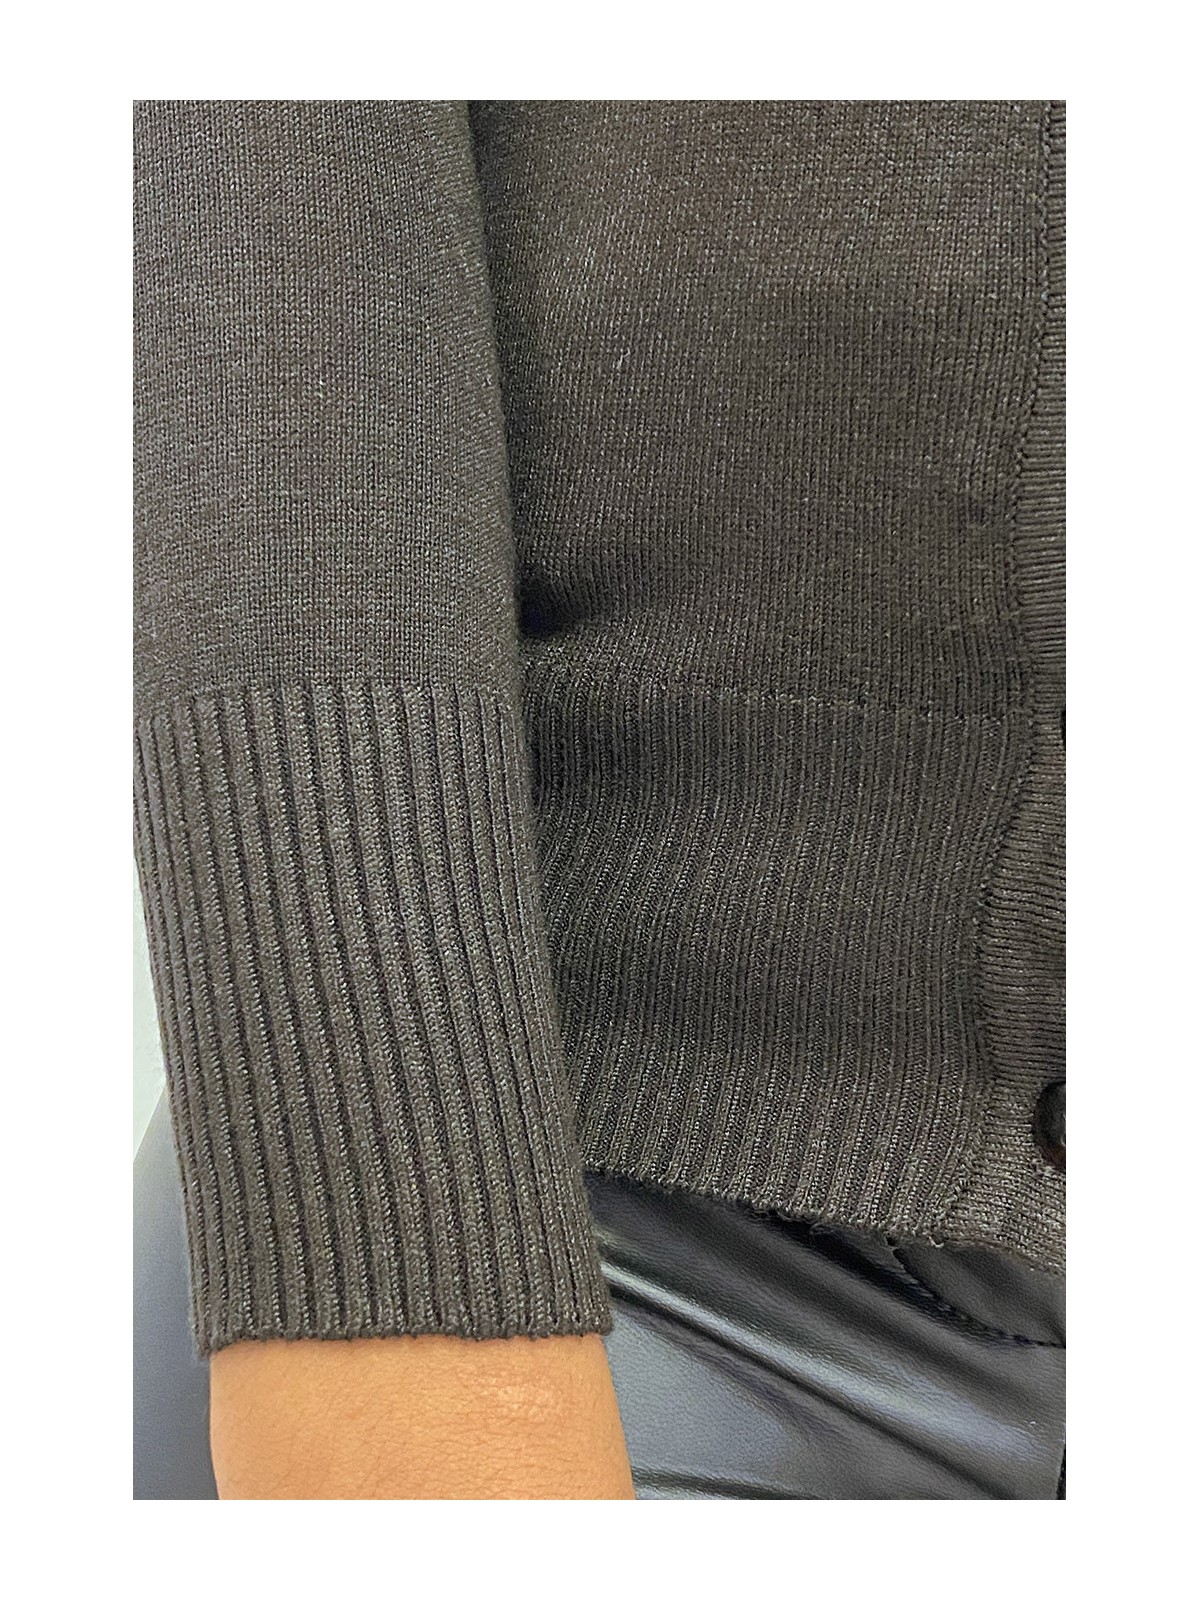 Gilet marron en maille tricot très extensible et très doux - 6